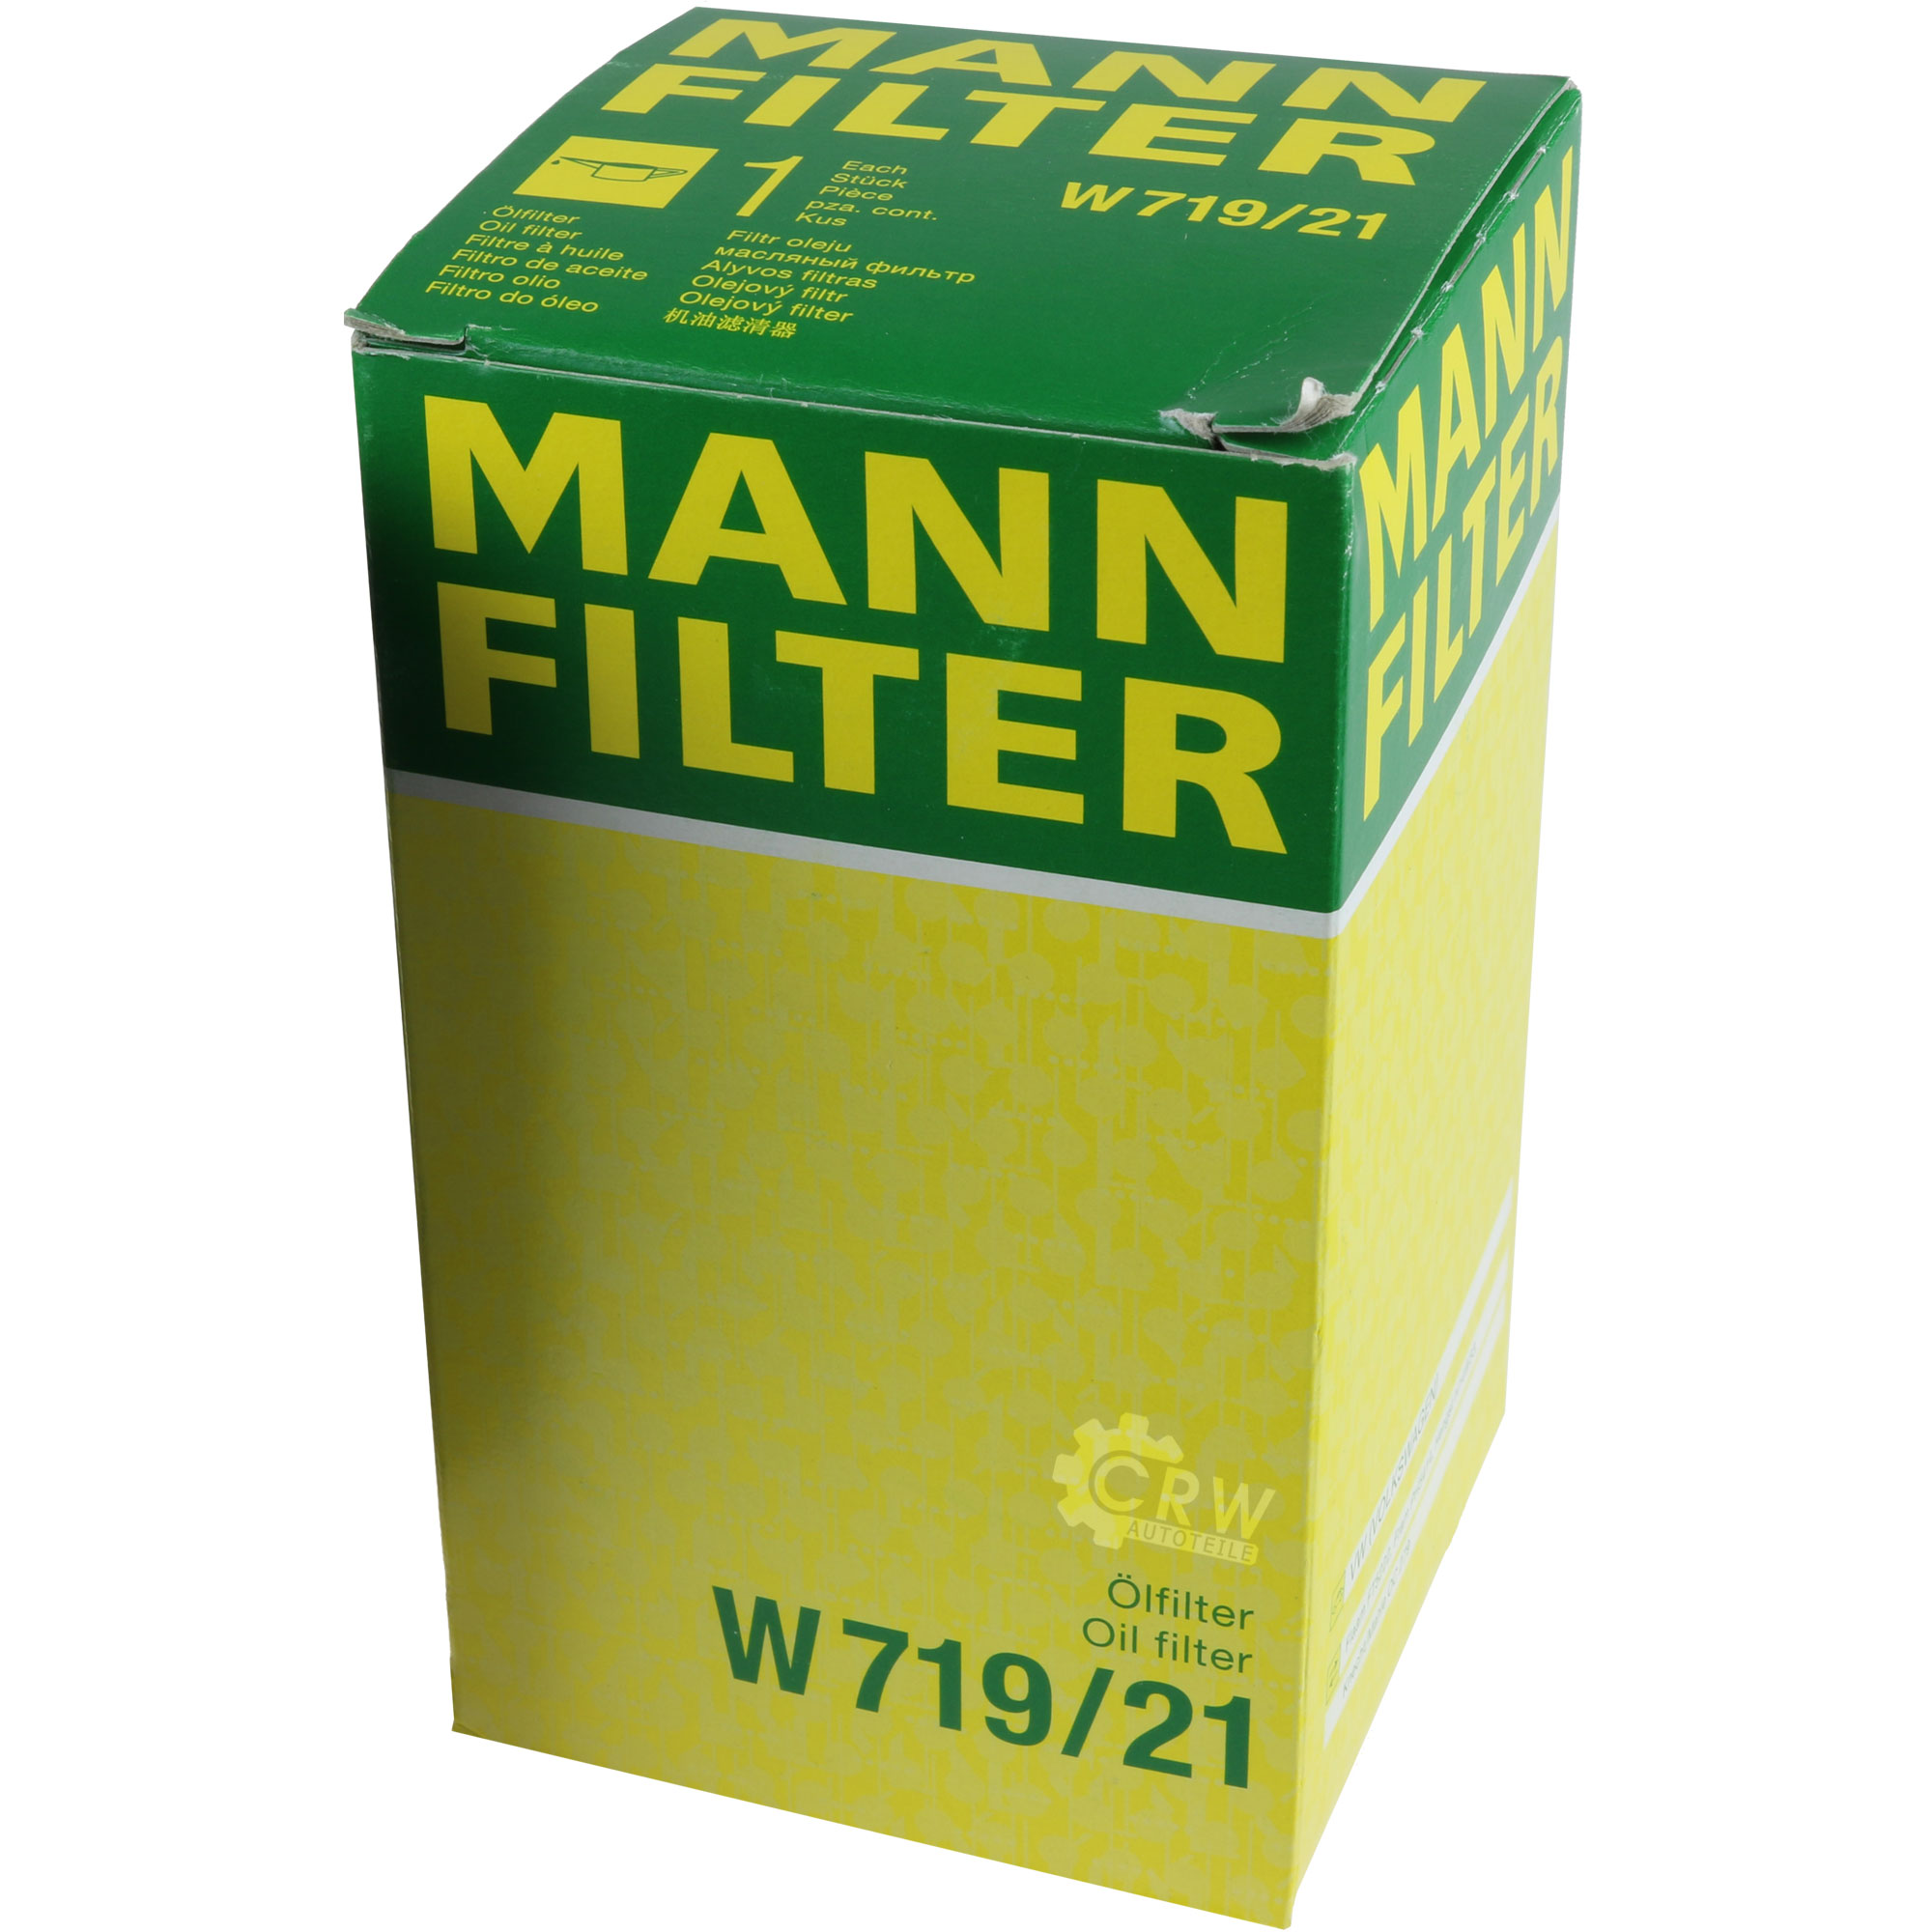 MANN-FILTER Ölfilter W 719/21 Oil Filter